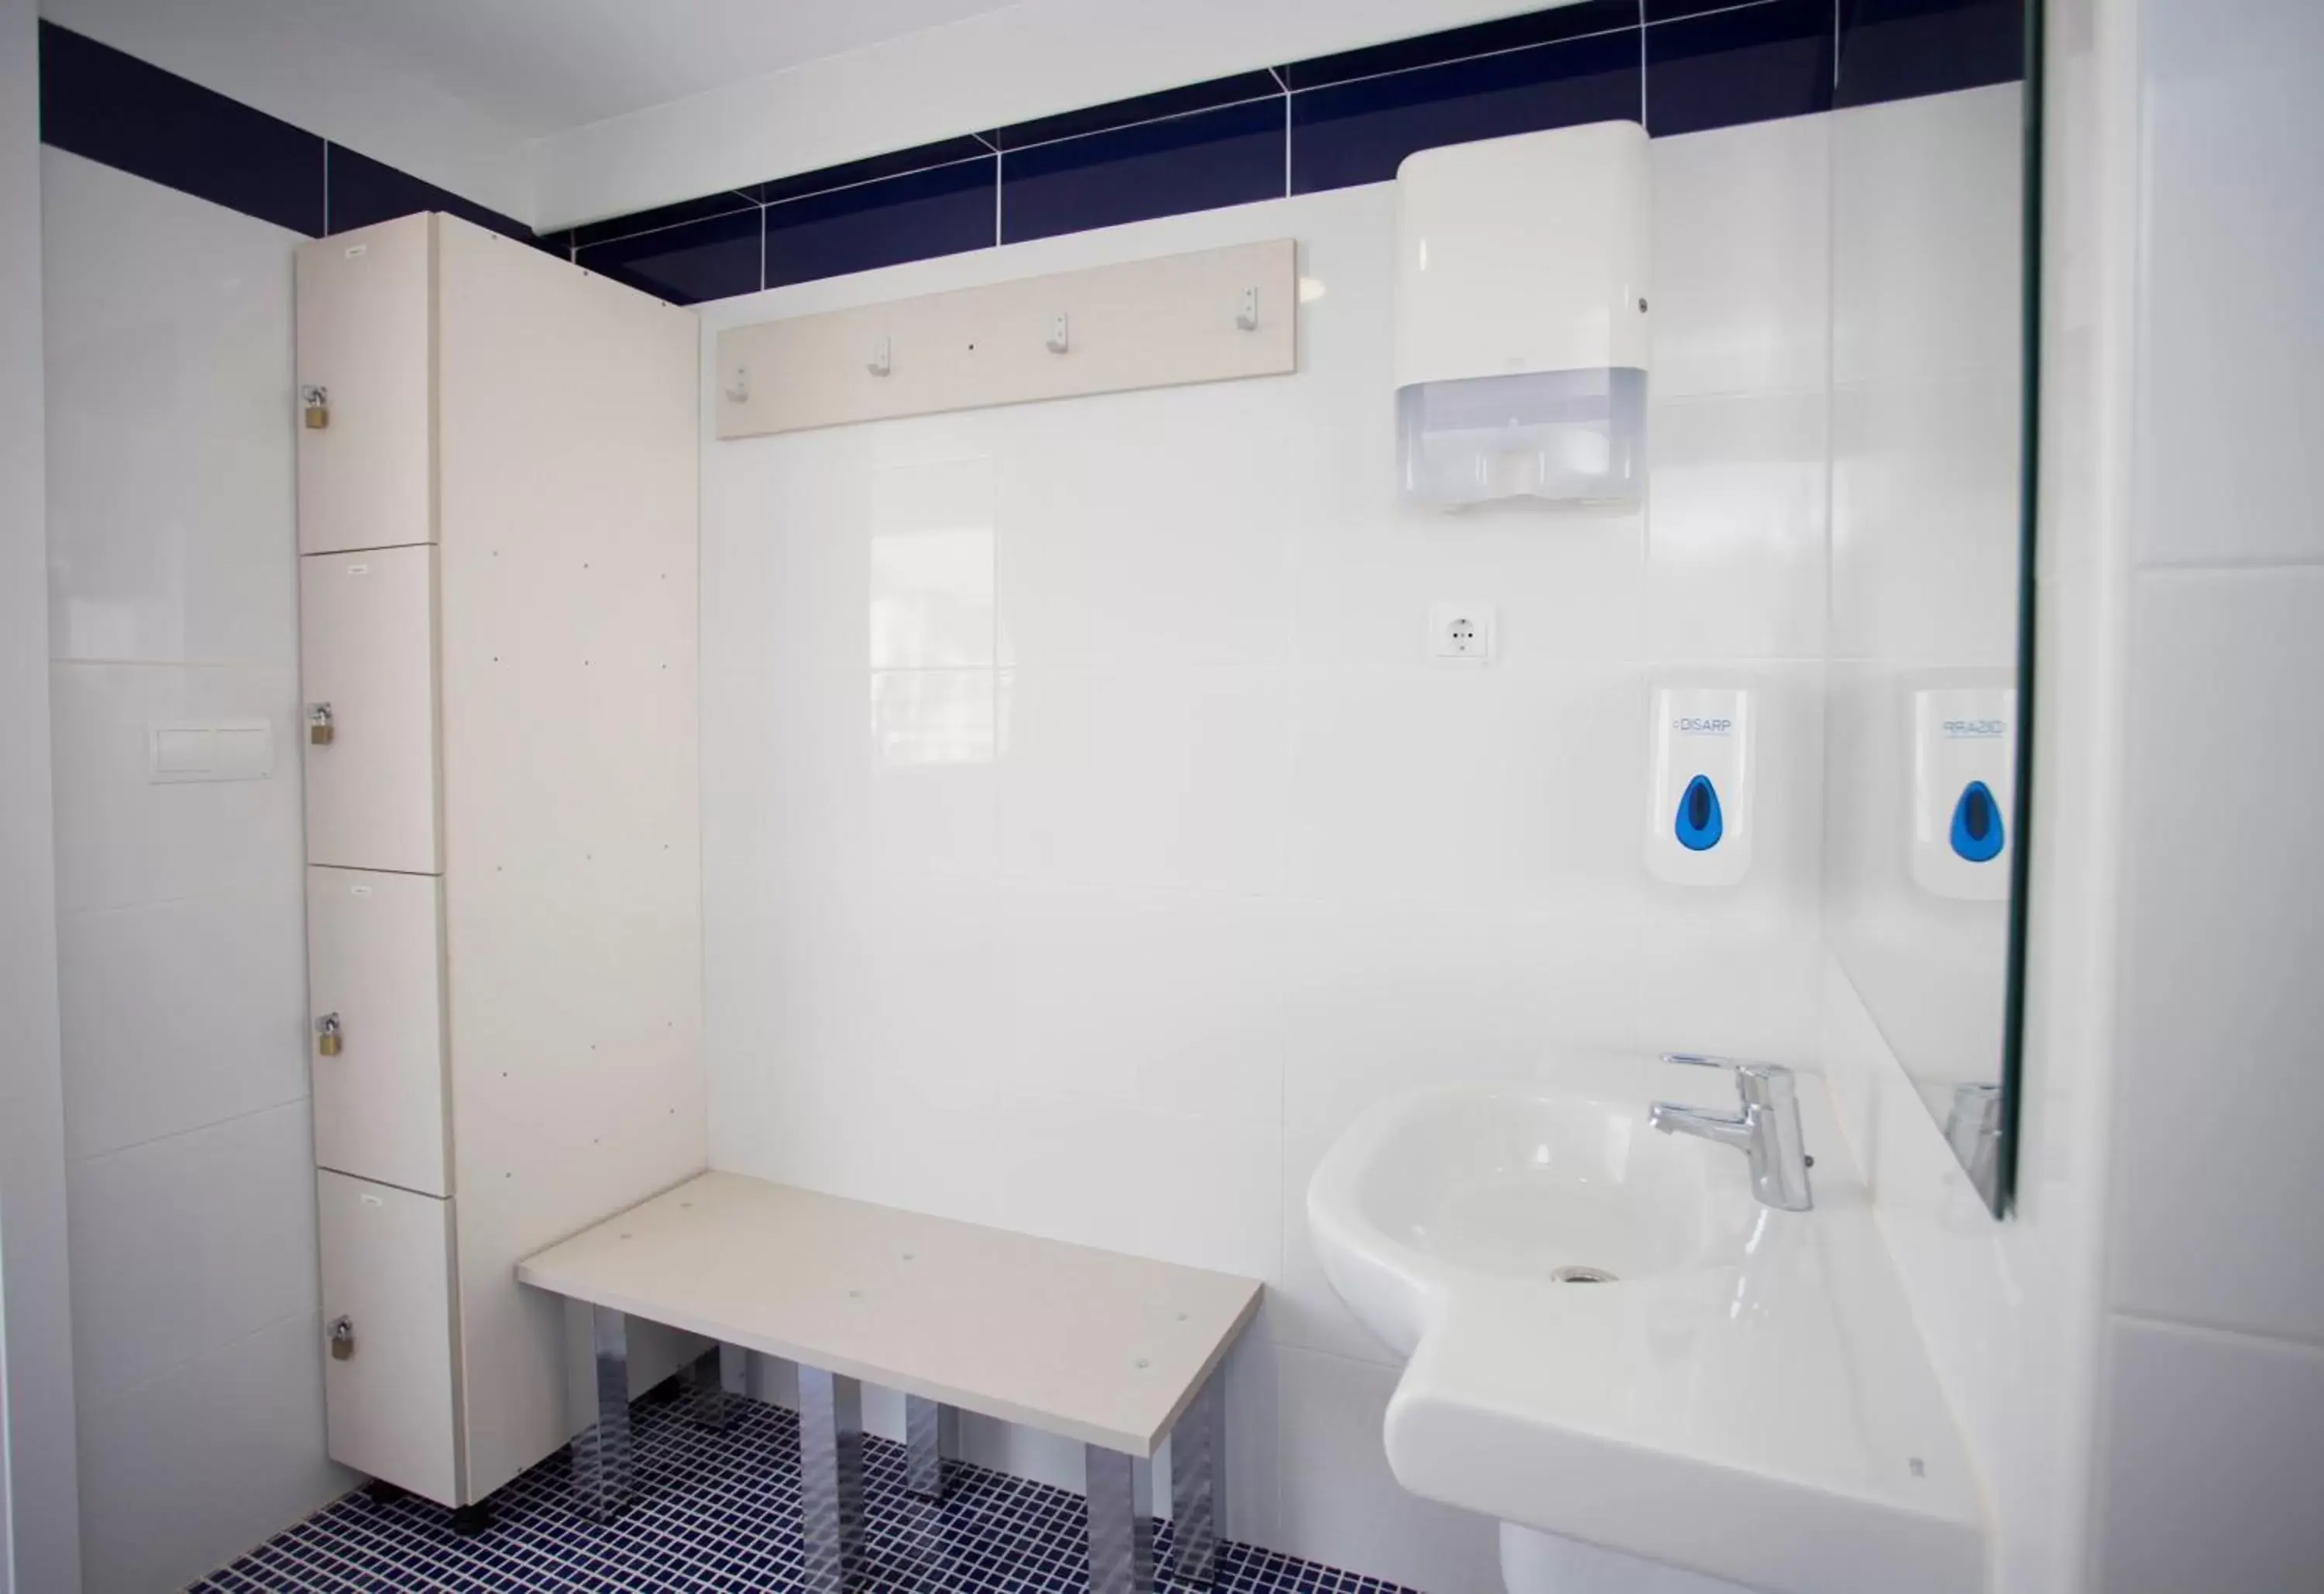 Area and facilities, Bathroom in Hotel Voramar